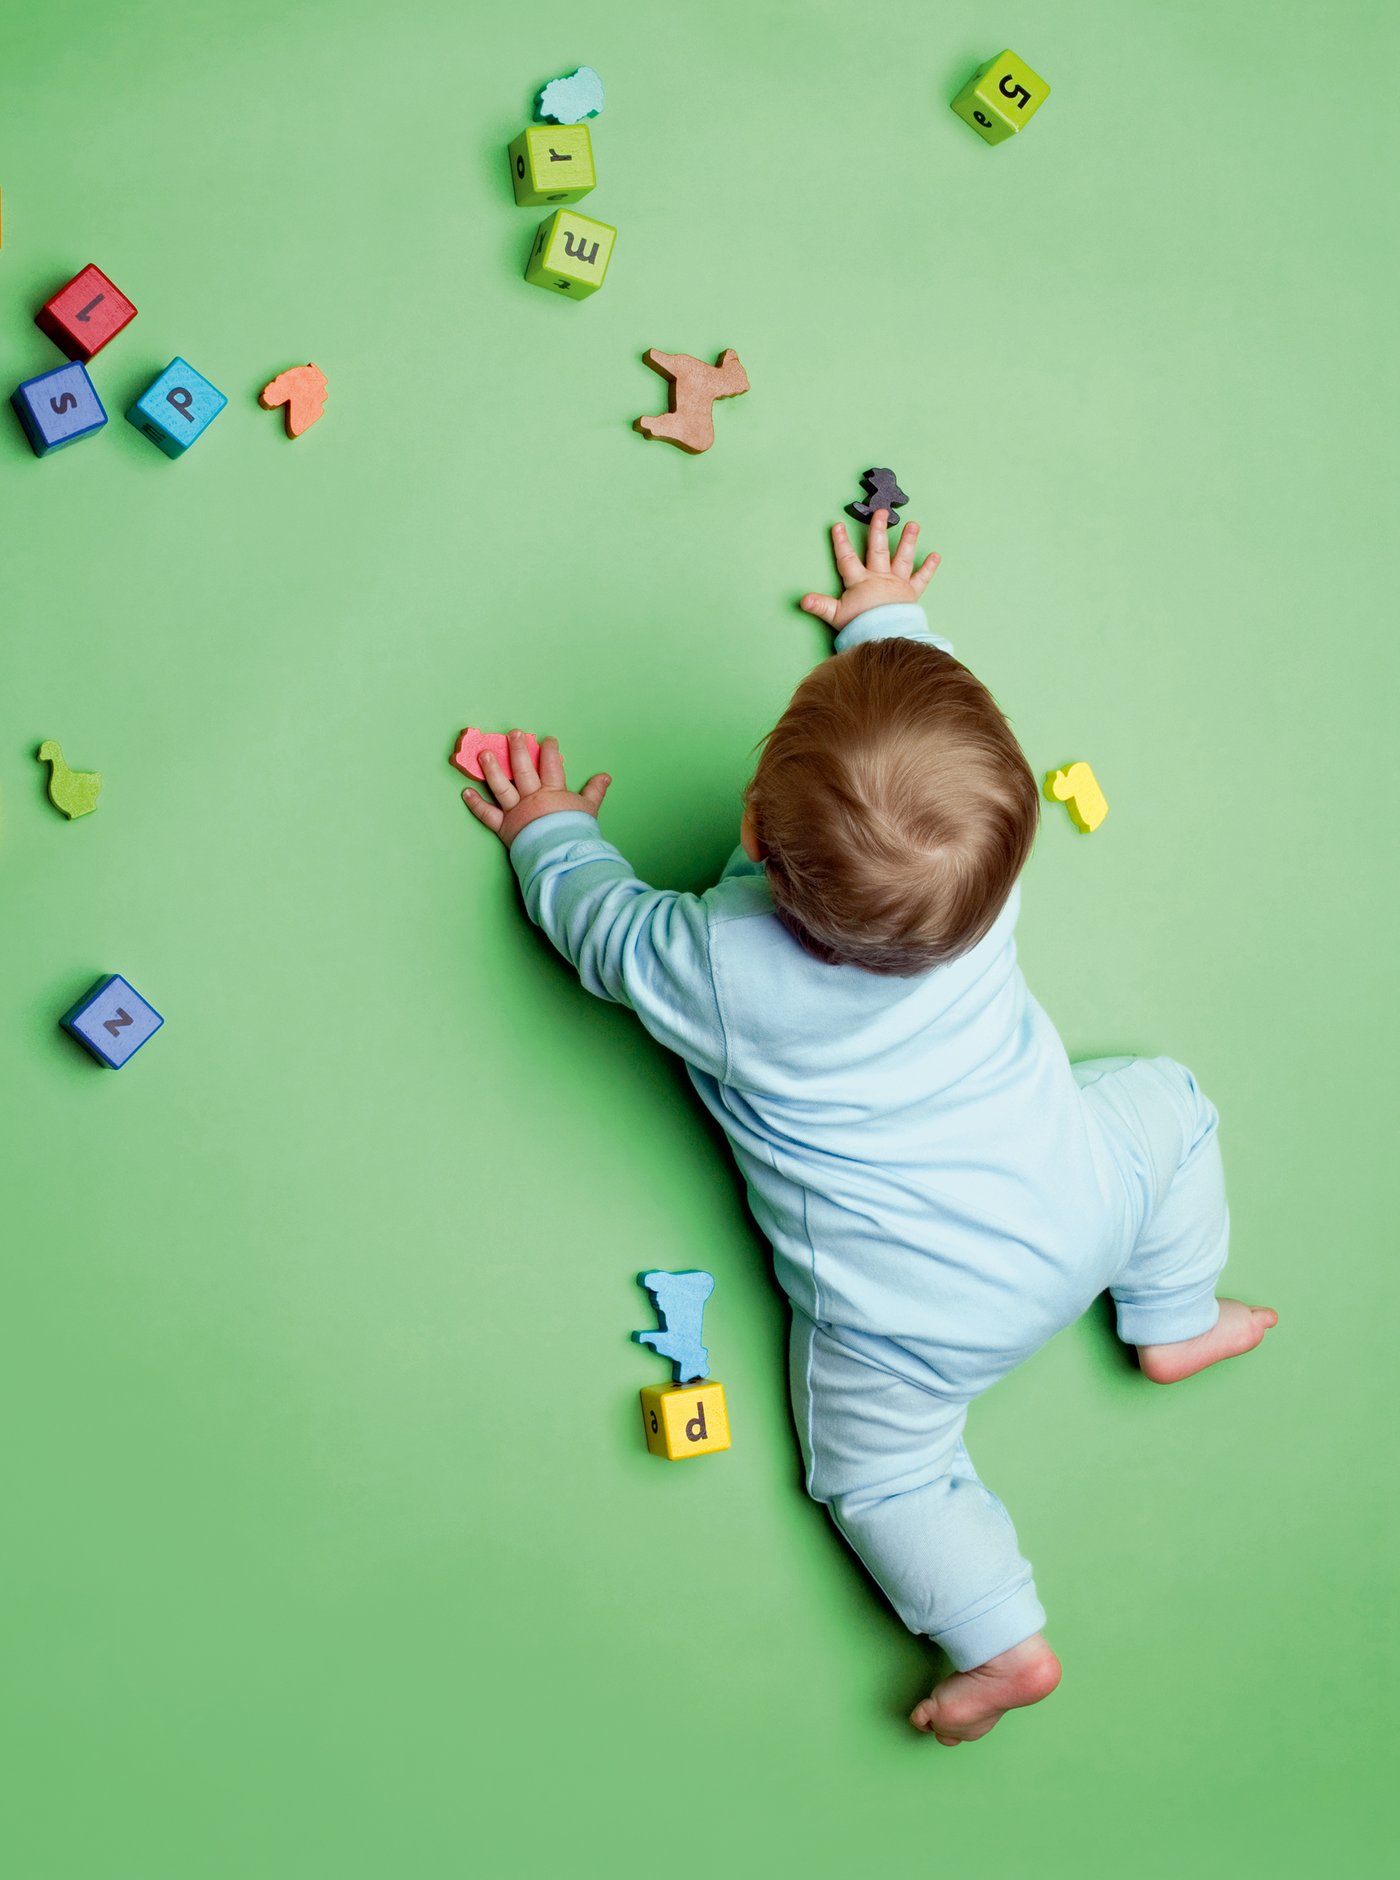 Bild von Baby auf Boden, das  von bunten Spielzeugklötzen und Tieren aus Holz umgeben ist.